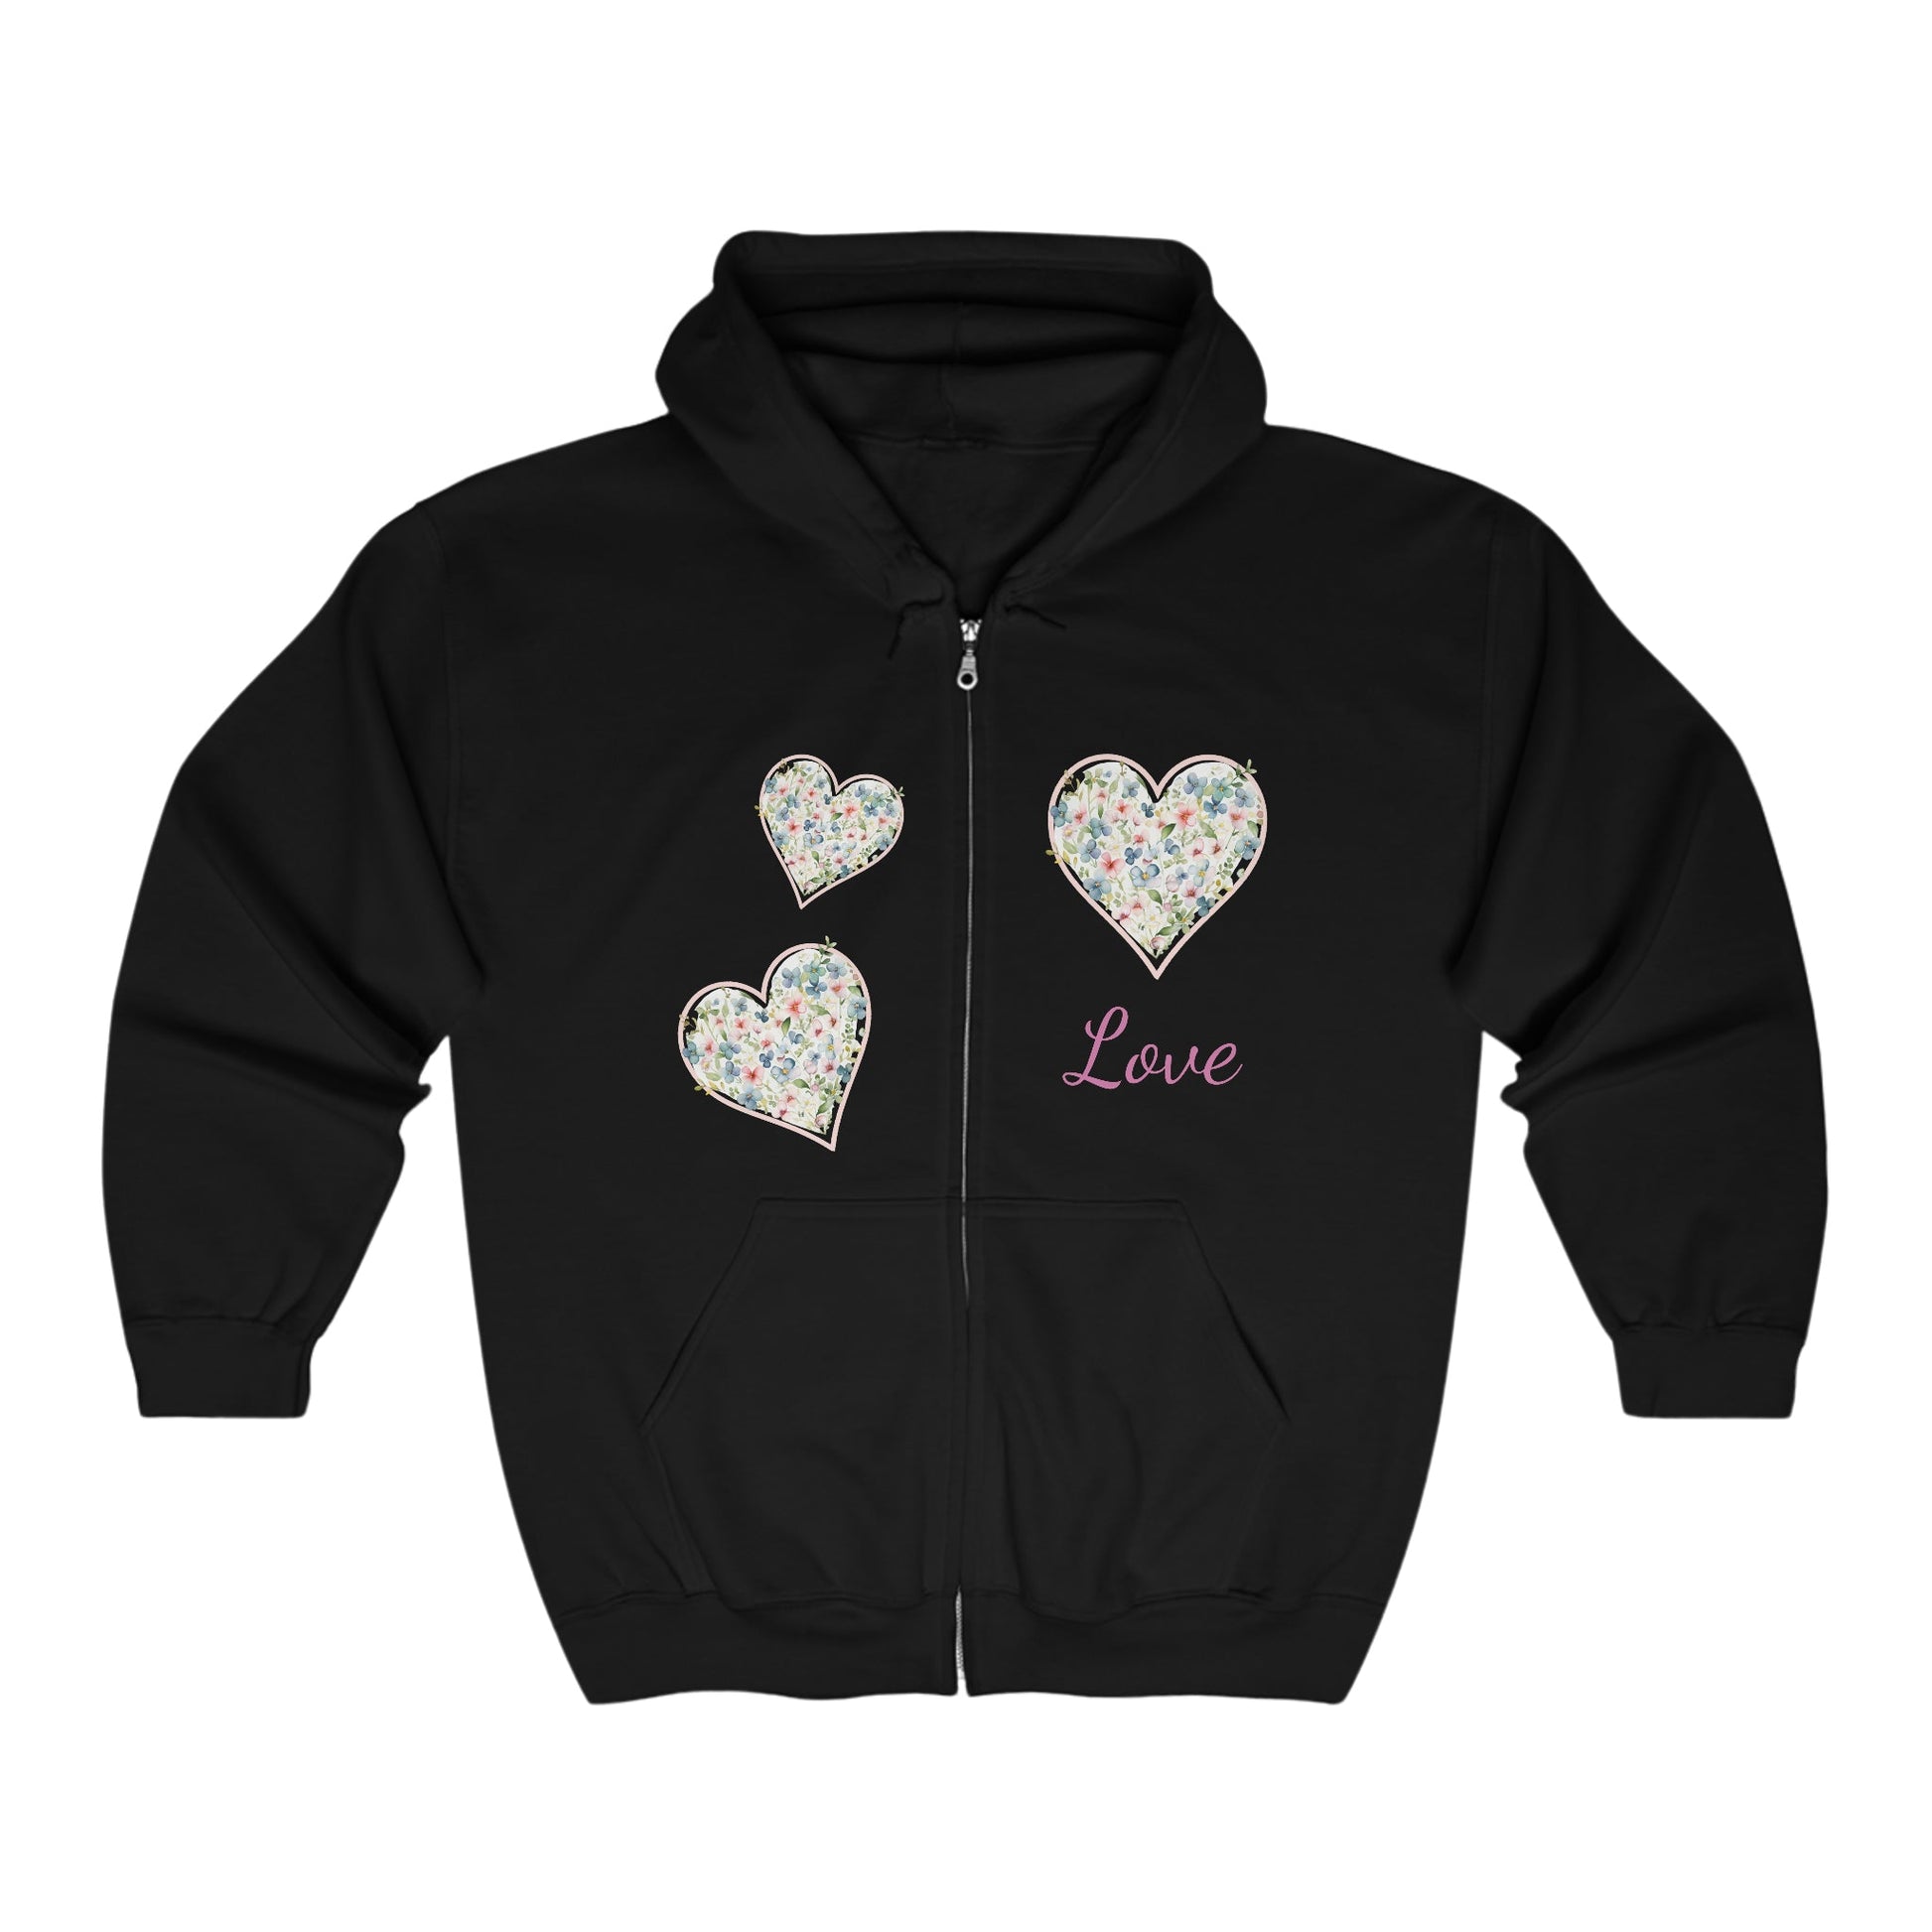 Multi Floral Hearts Full Zip Jacket, Personalized Country Hoodie Aesthetic - FlooredByArt